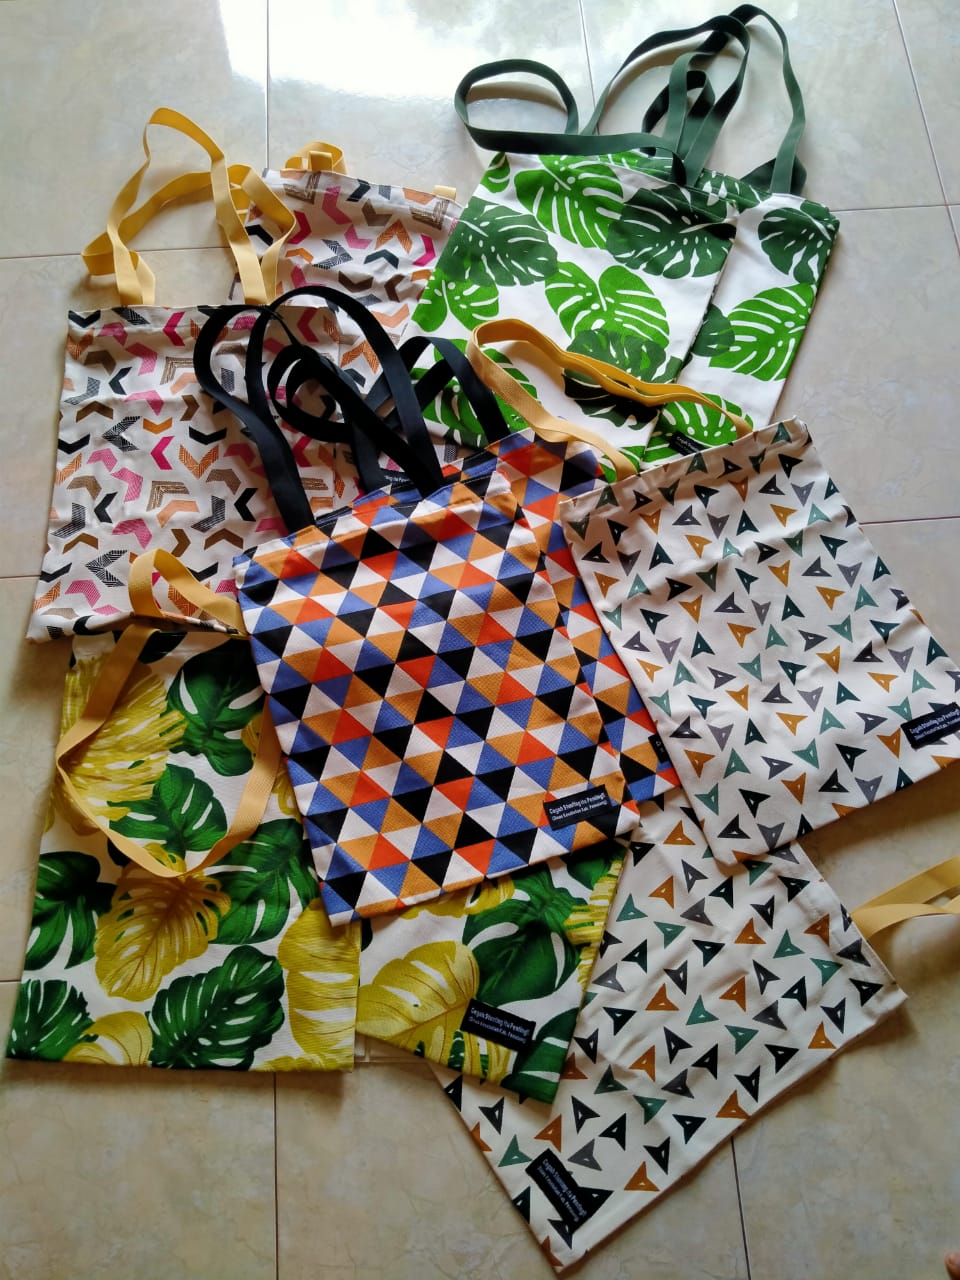 melayani pembelian tote bag custom bisa custom dengan desain sesuai permintaan dan budget dari Ternate